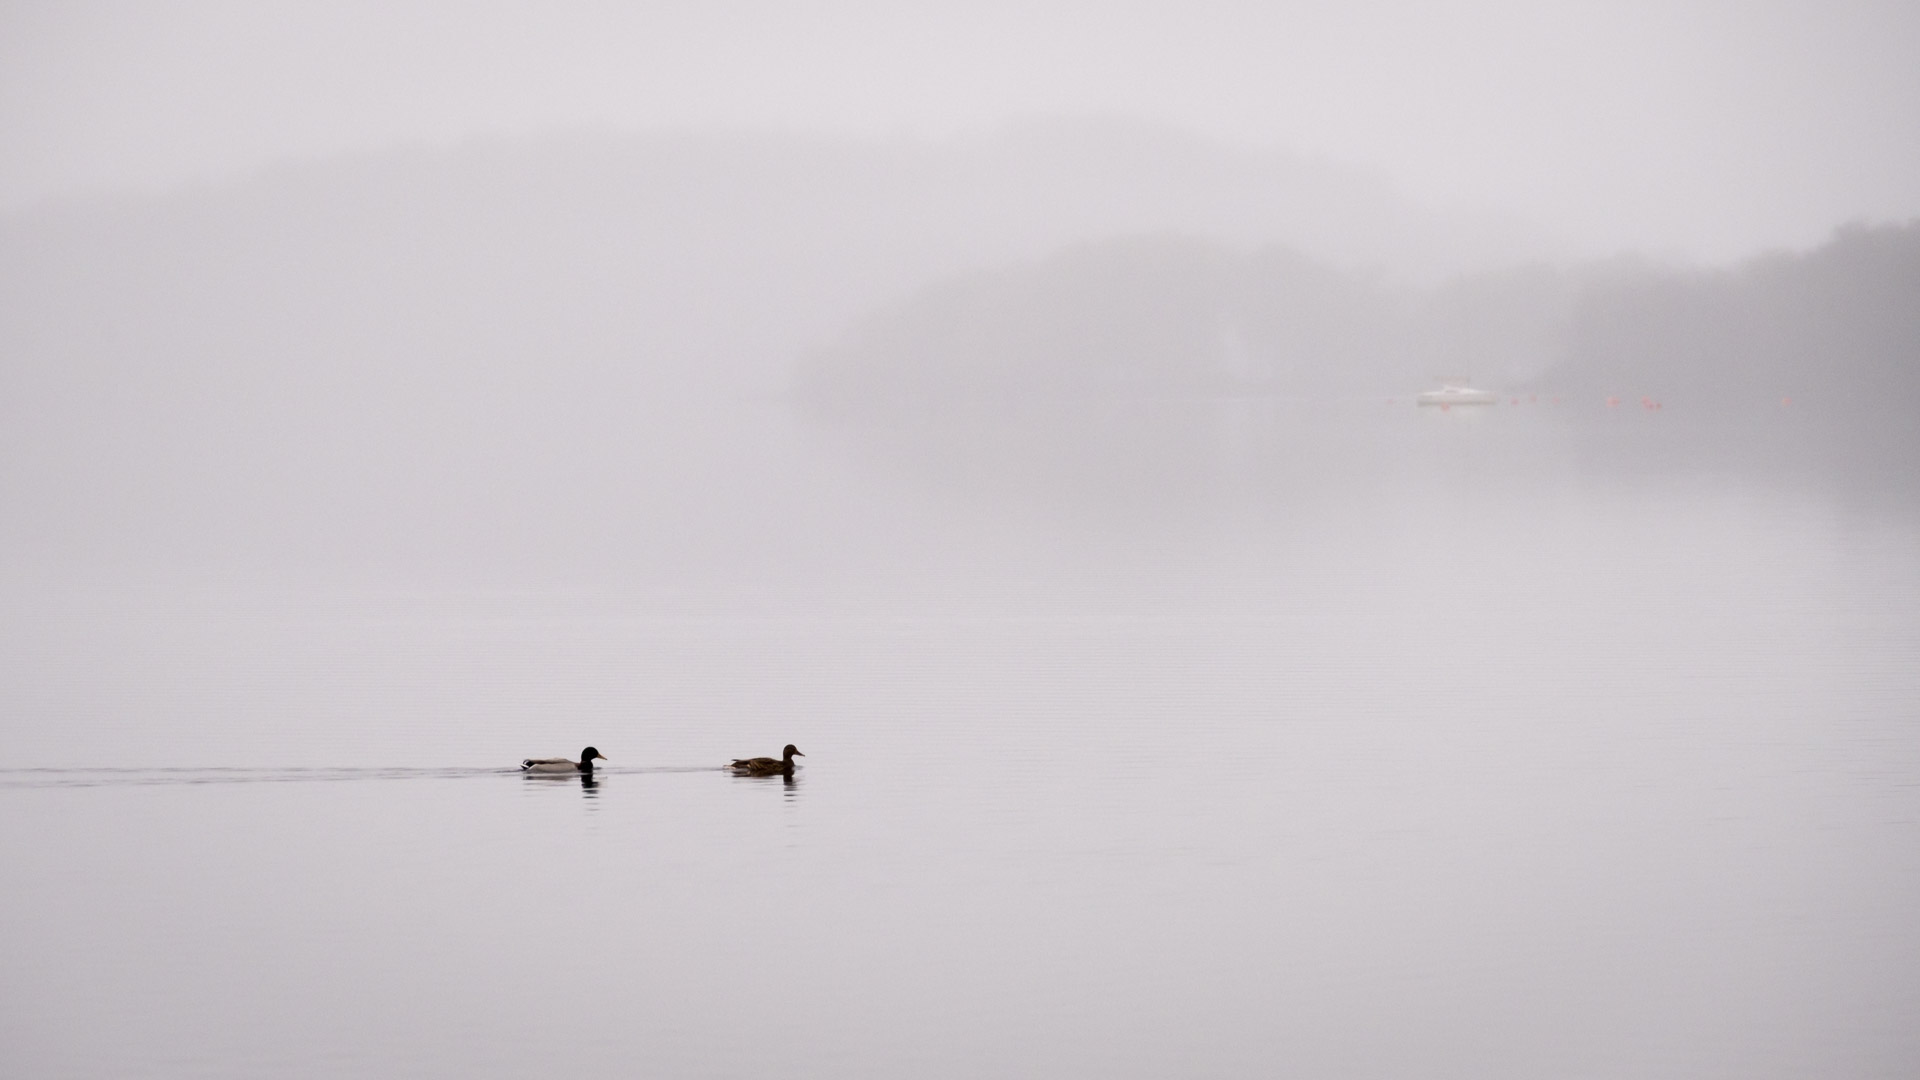 8.11.2021 - Milarrochy Bay, Loch Lomond - Solitude